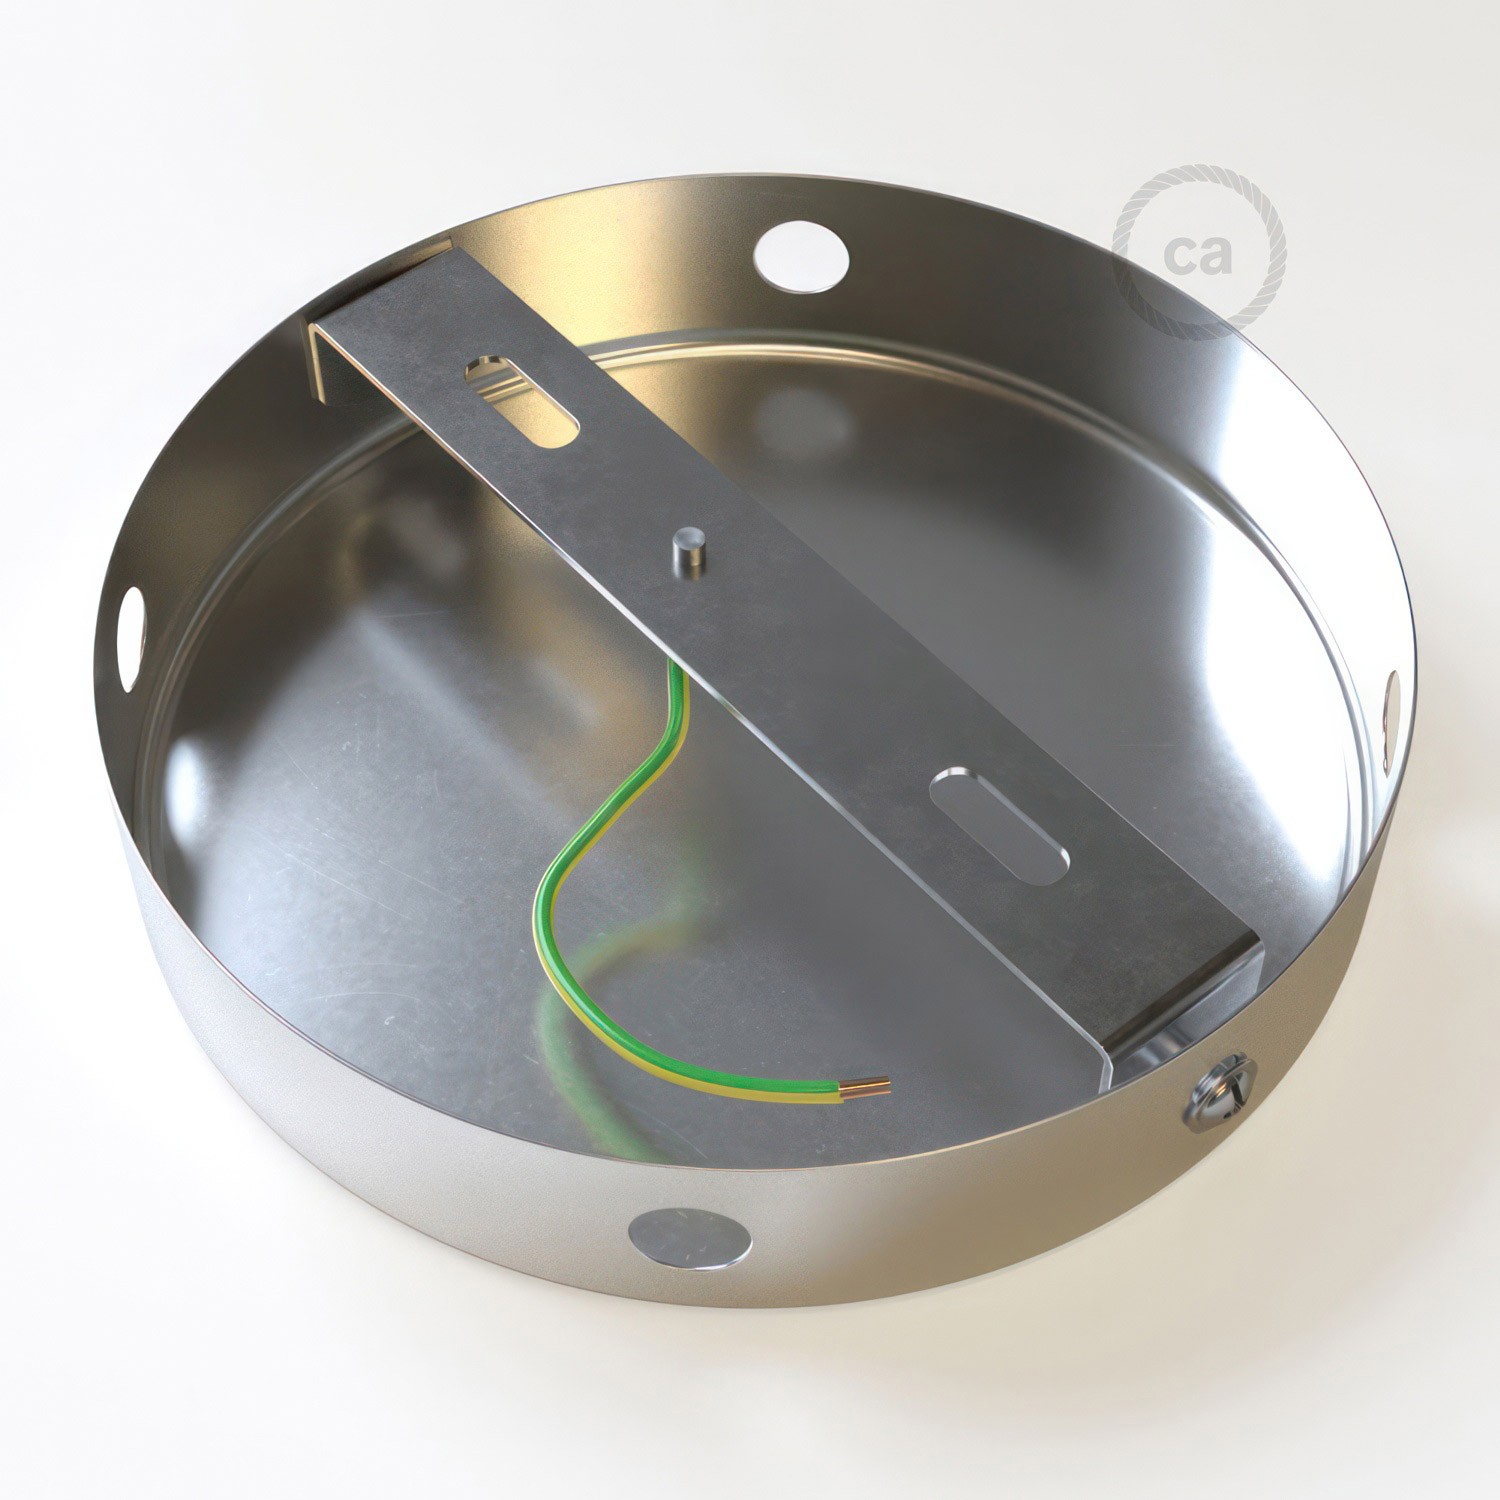 Kit rosetón cilíndrico de metal 4 agujeros laterales (caja de conexión)